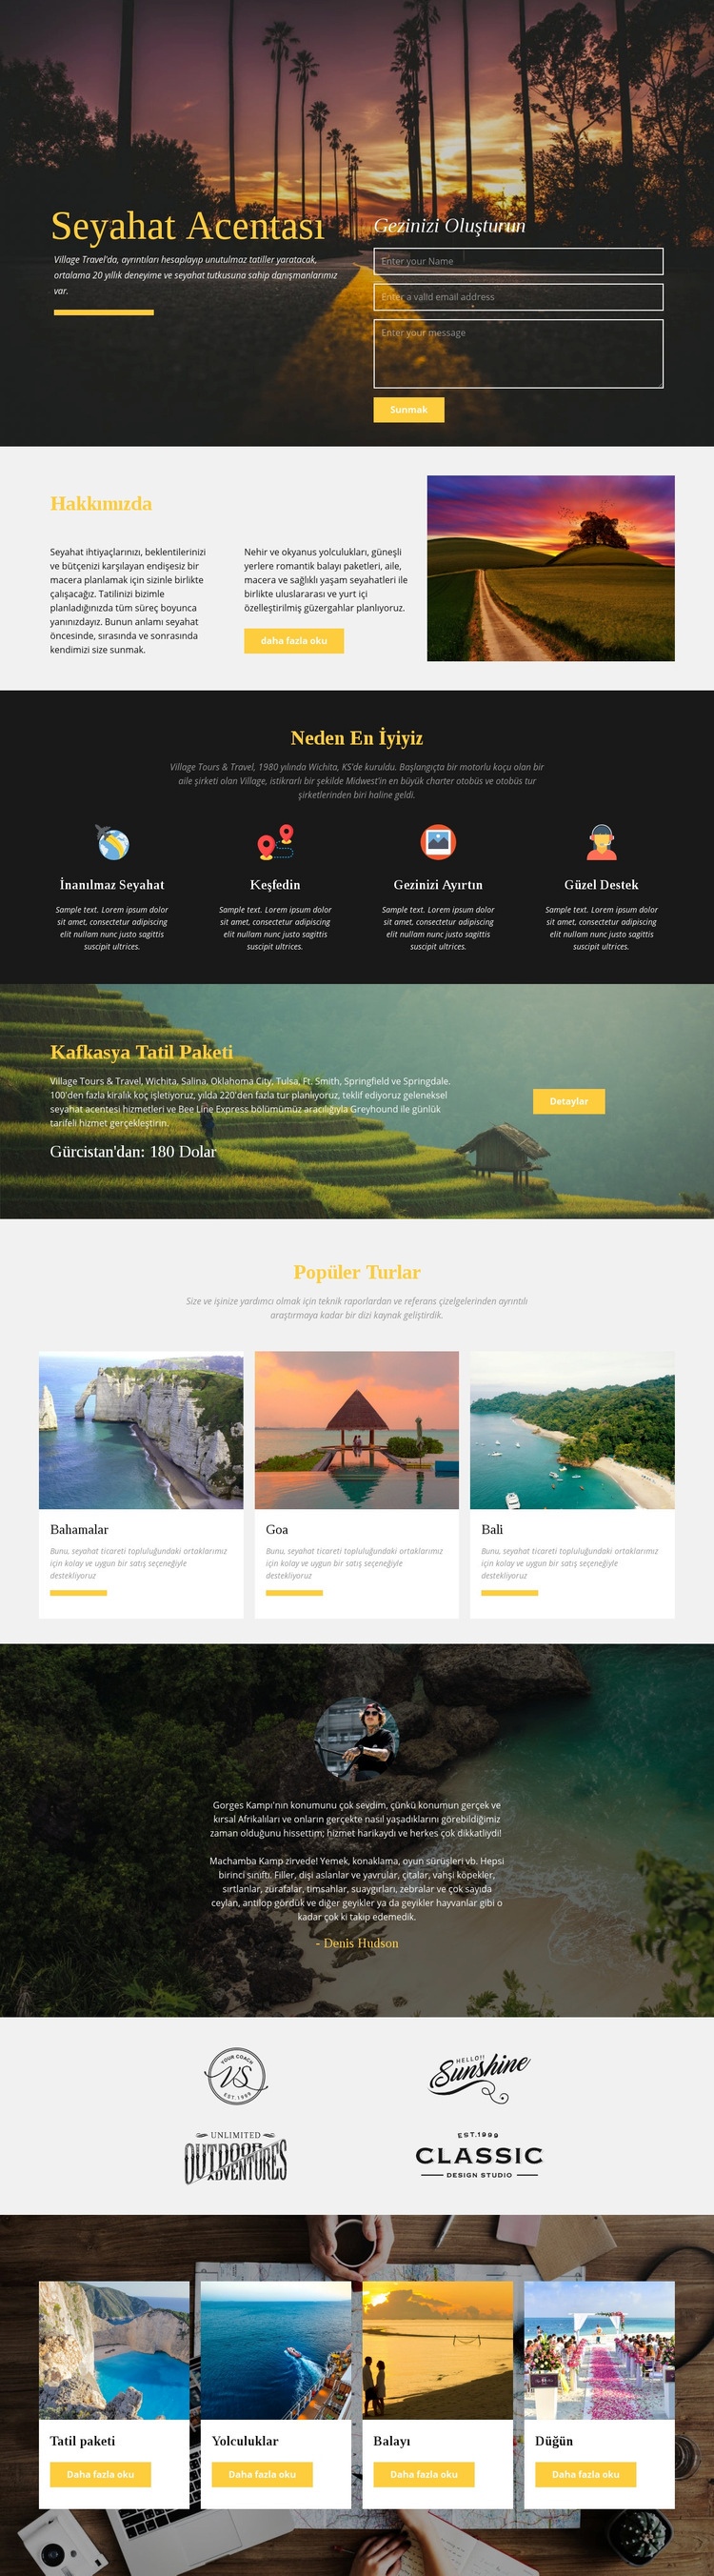 Afrika safari tur şirketi HTML5 Şablonu